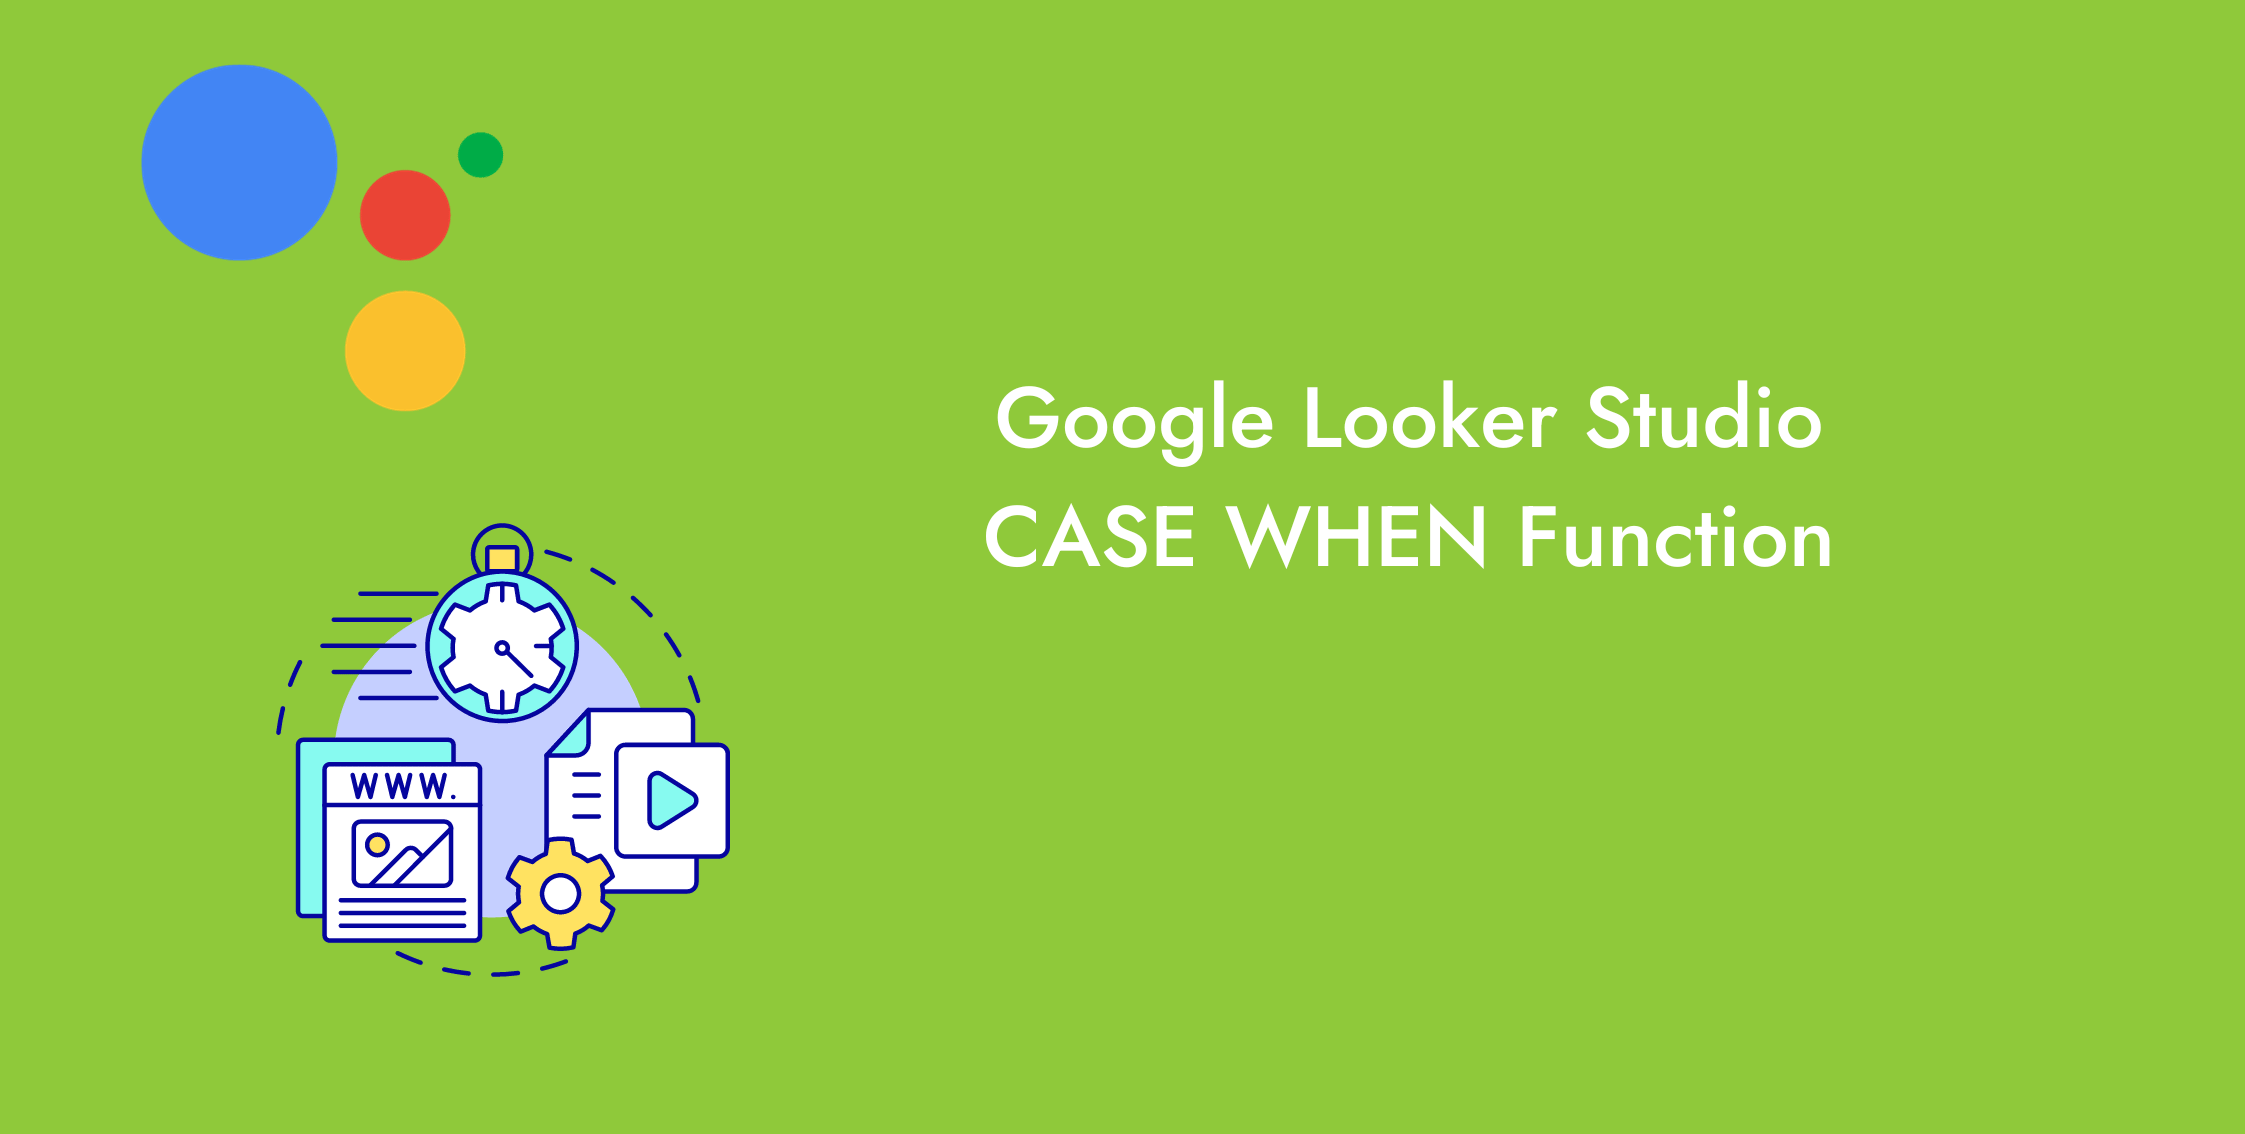 Understanding the Google Looker Studio Case When Function